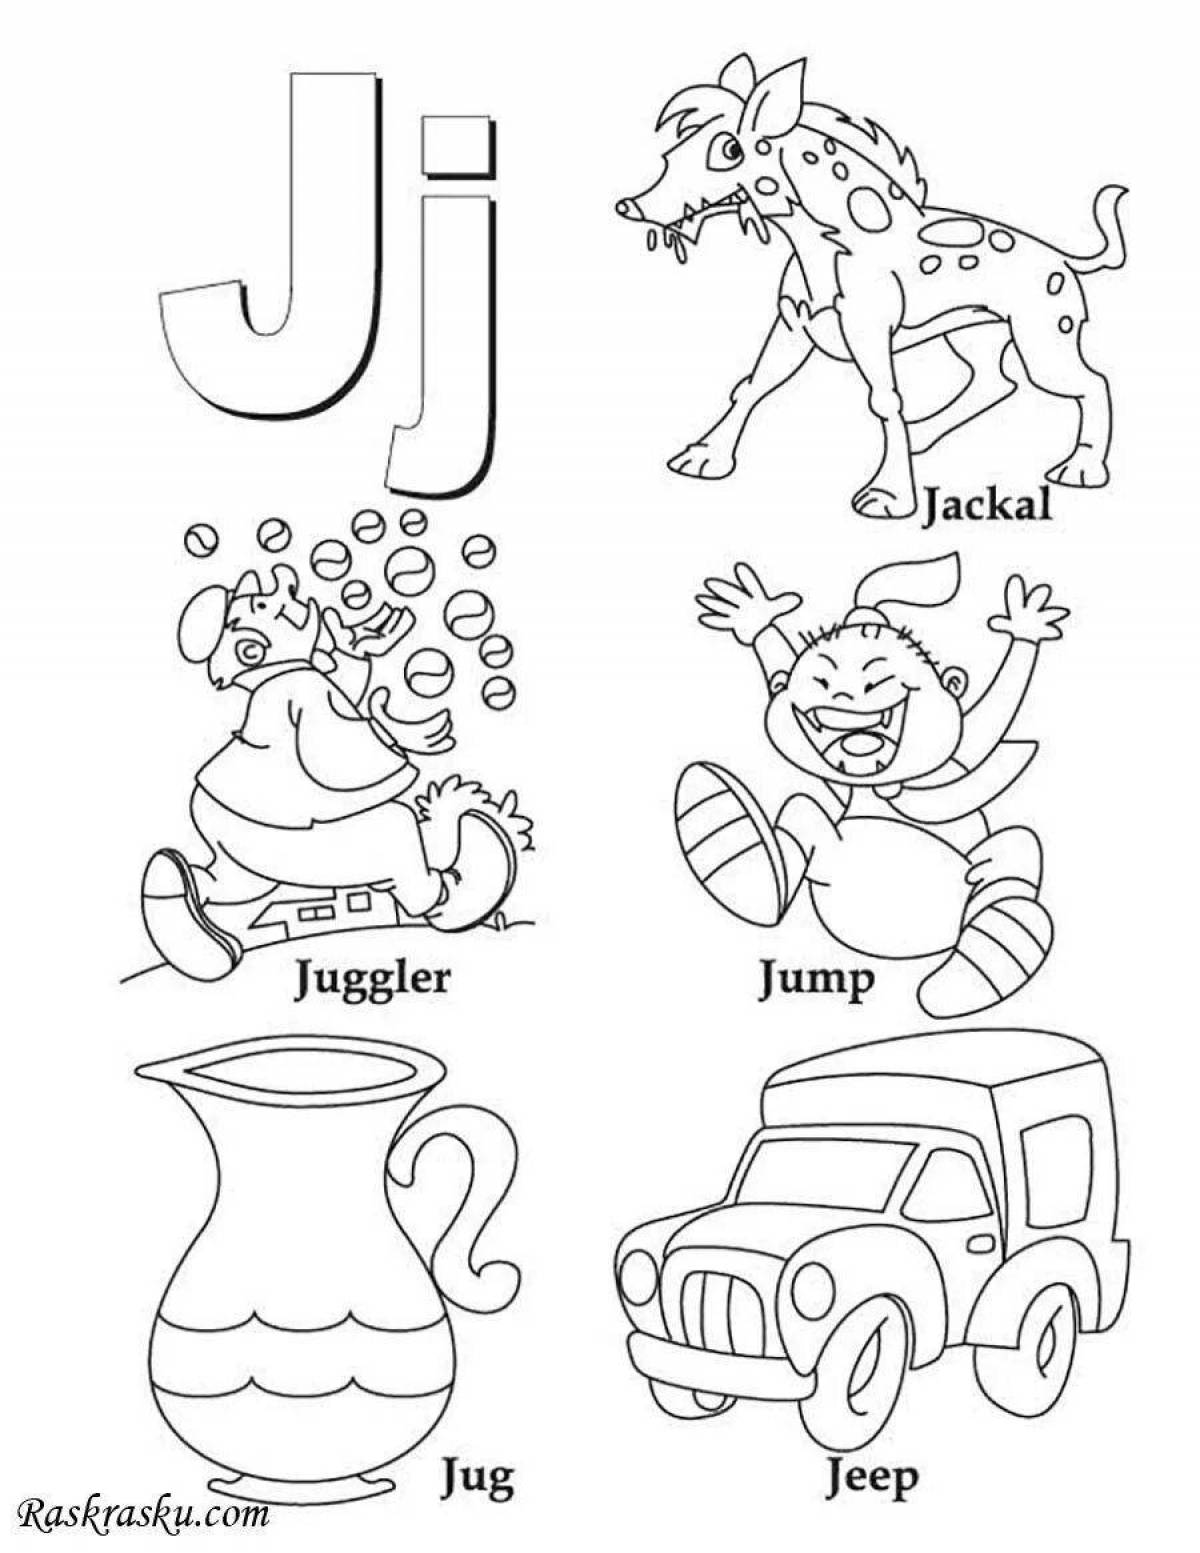 Креативная раскраска английского алфавита для детей